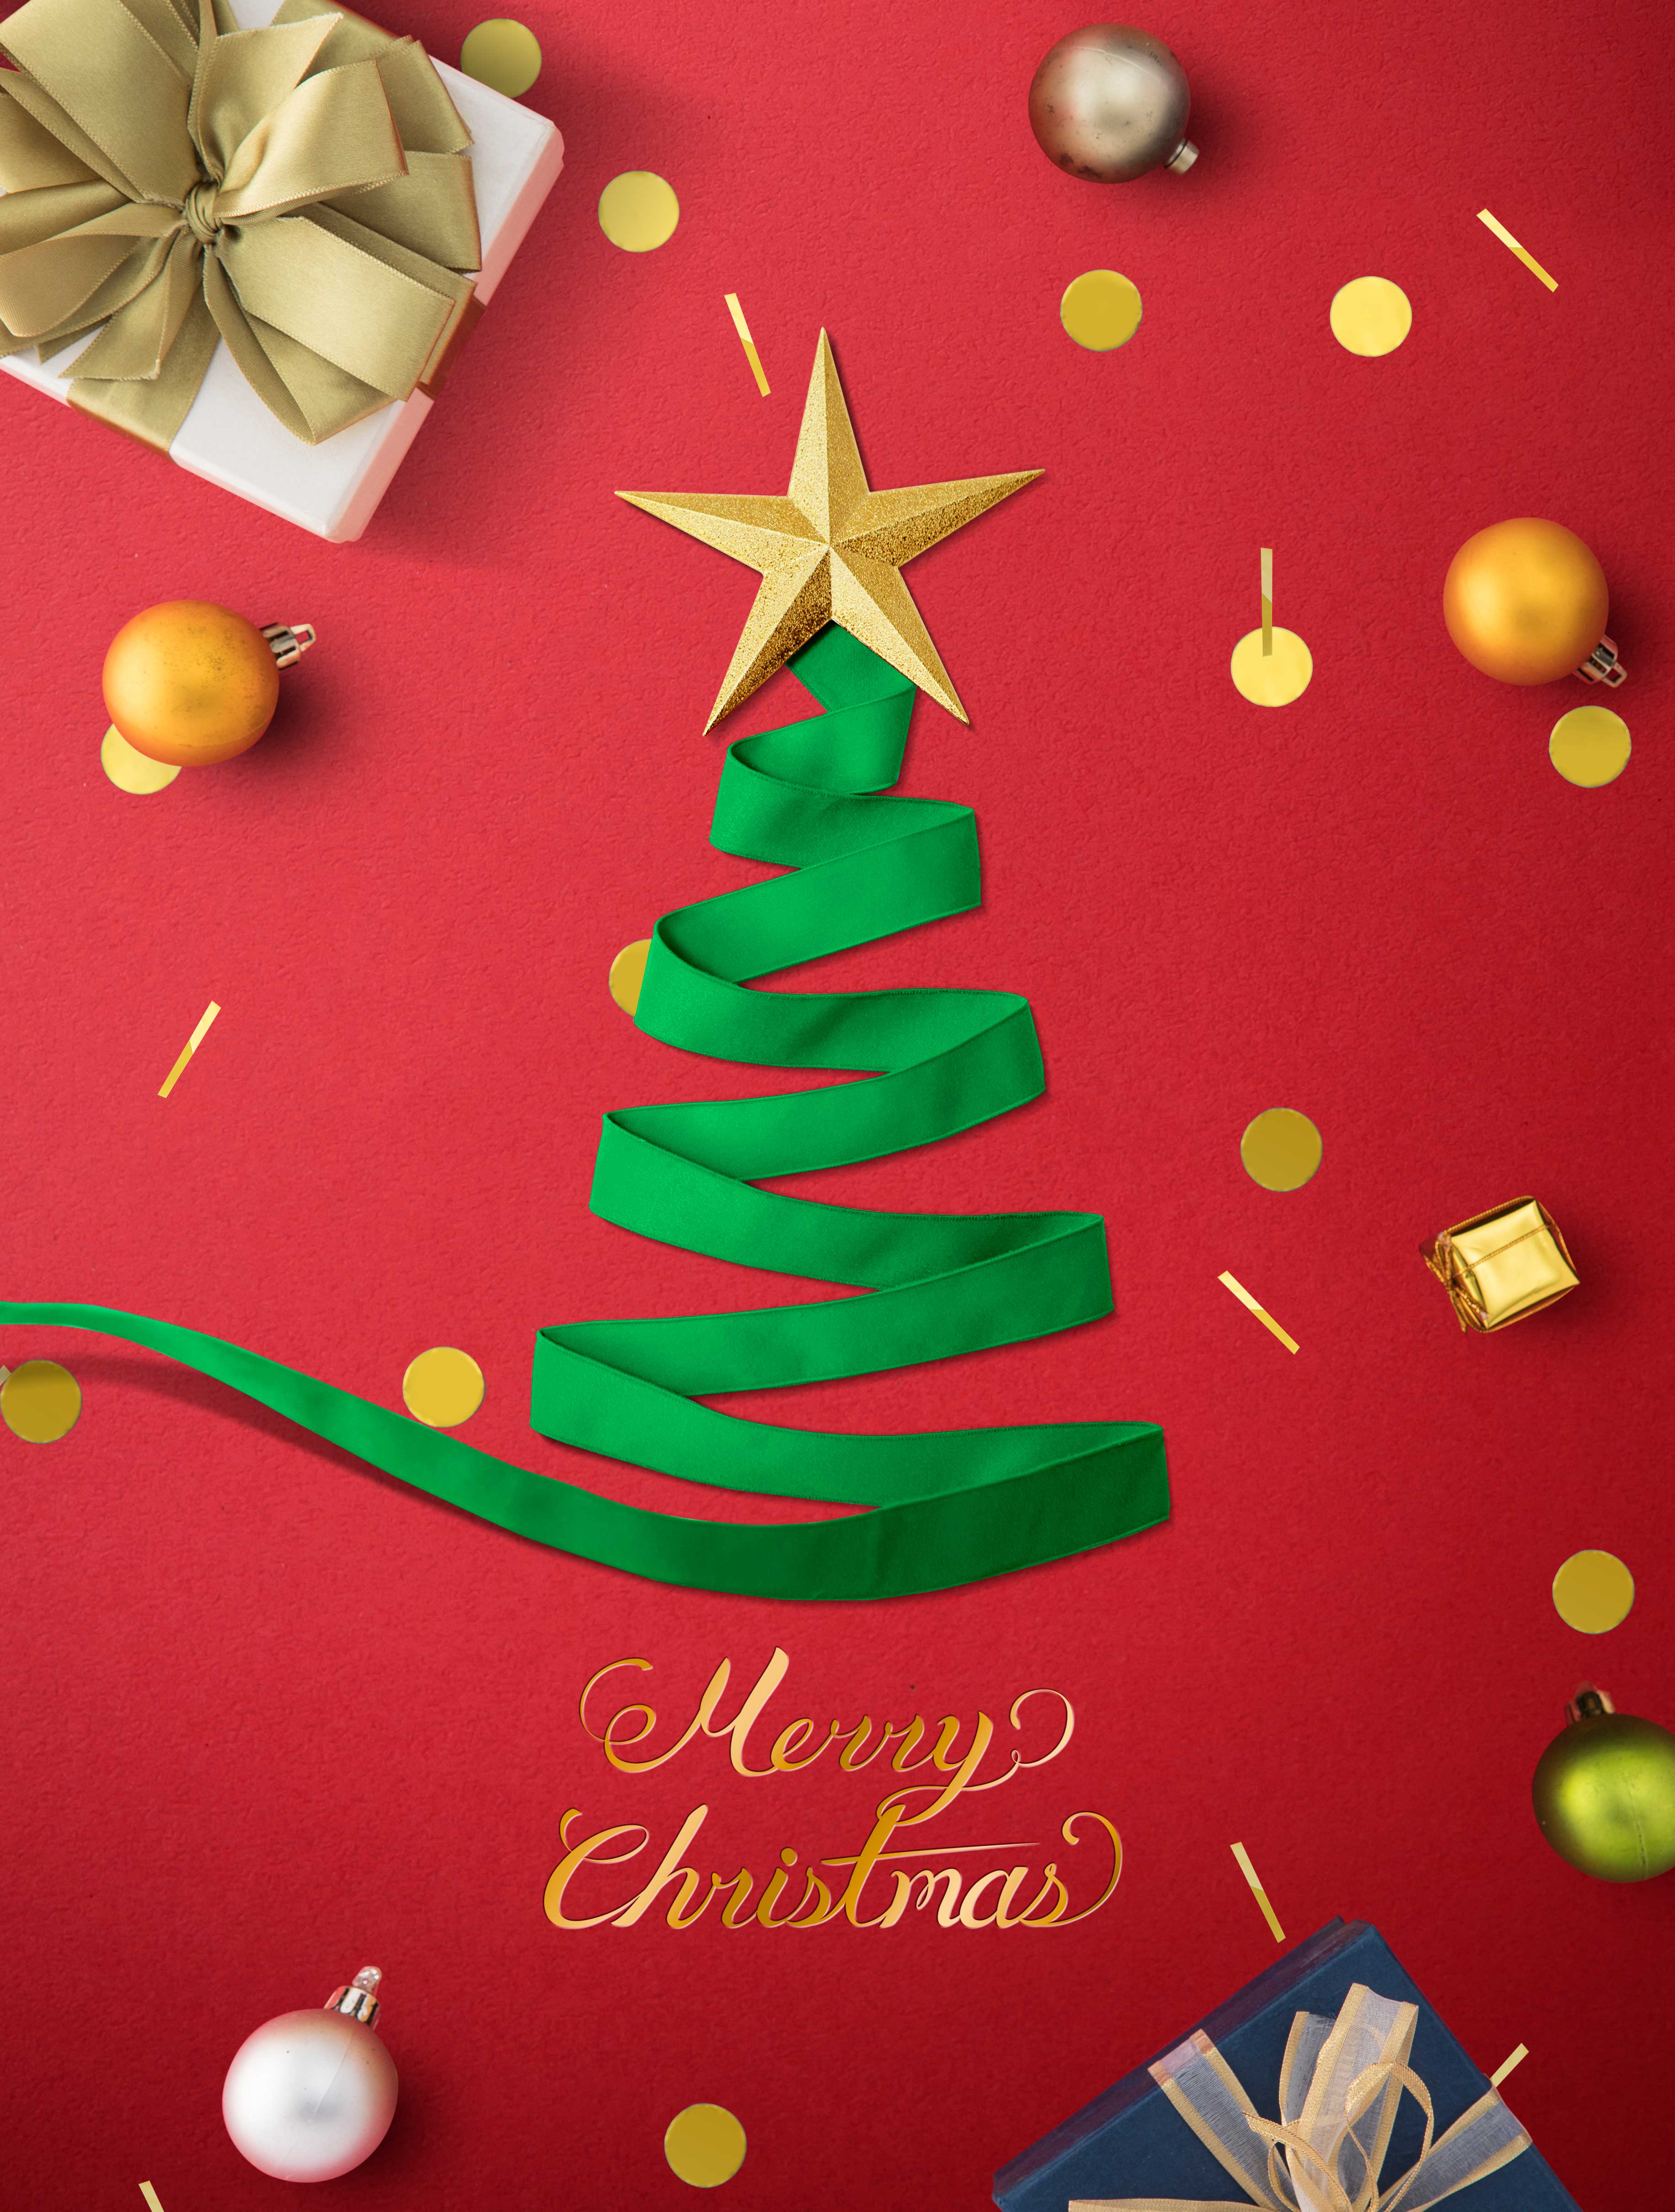 圣诞快乐海报创意丝带圣诞树设计模板设计素材模板